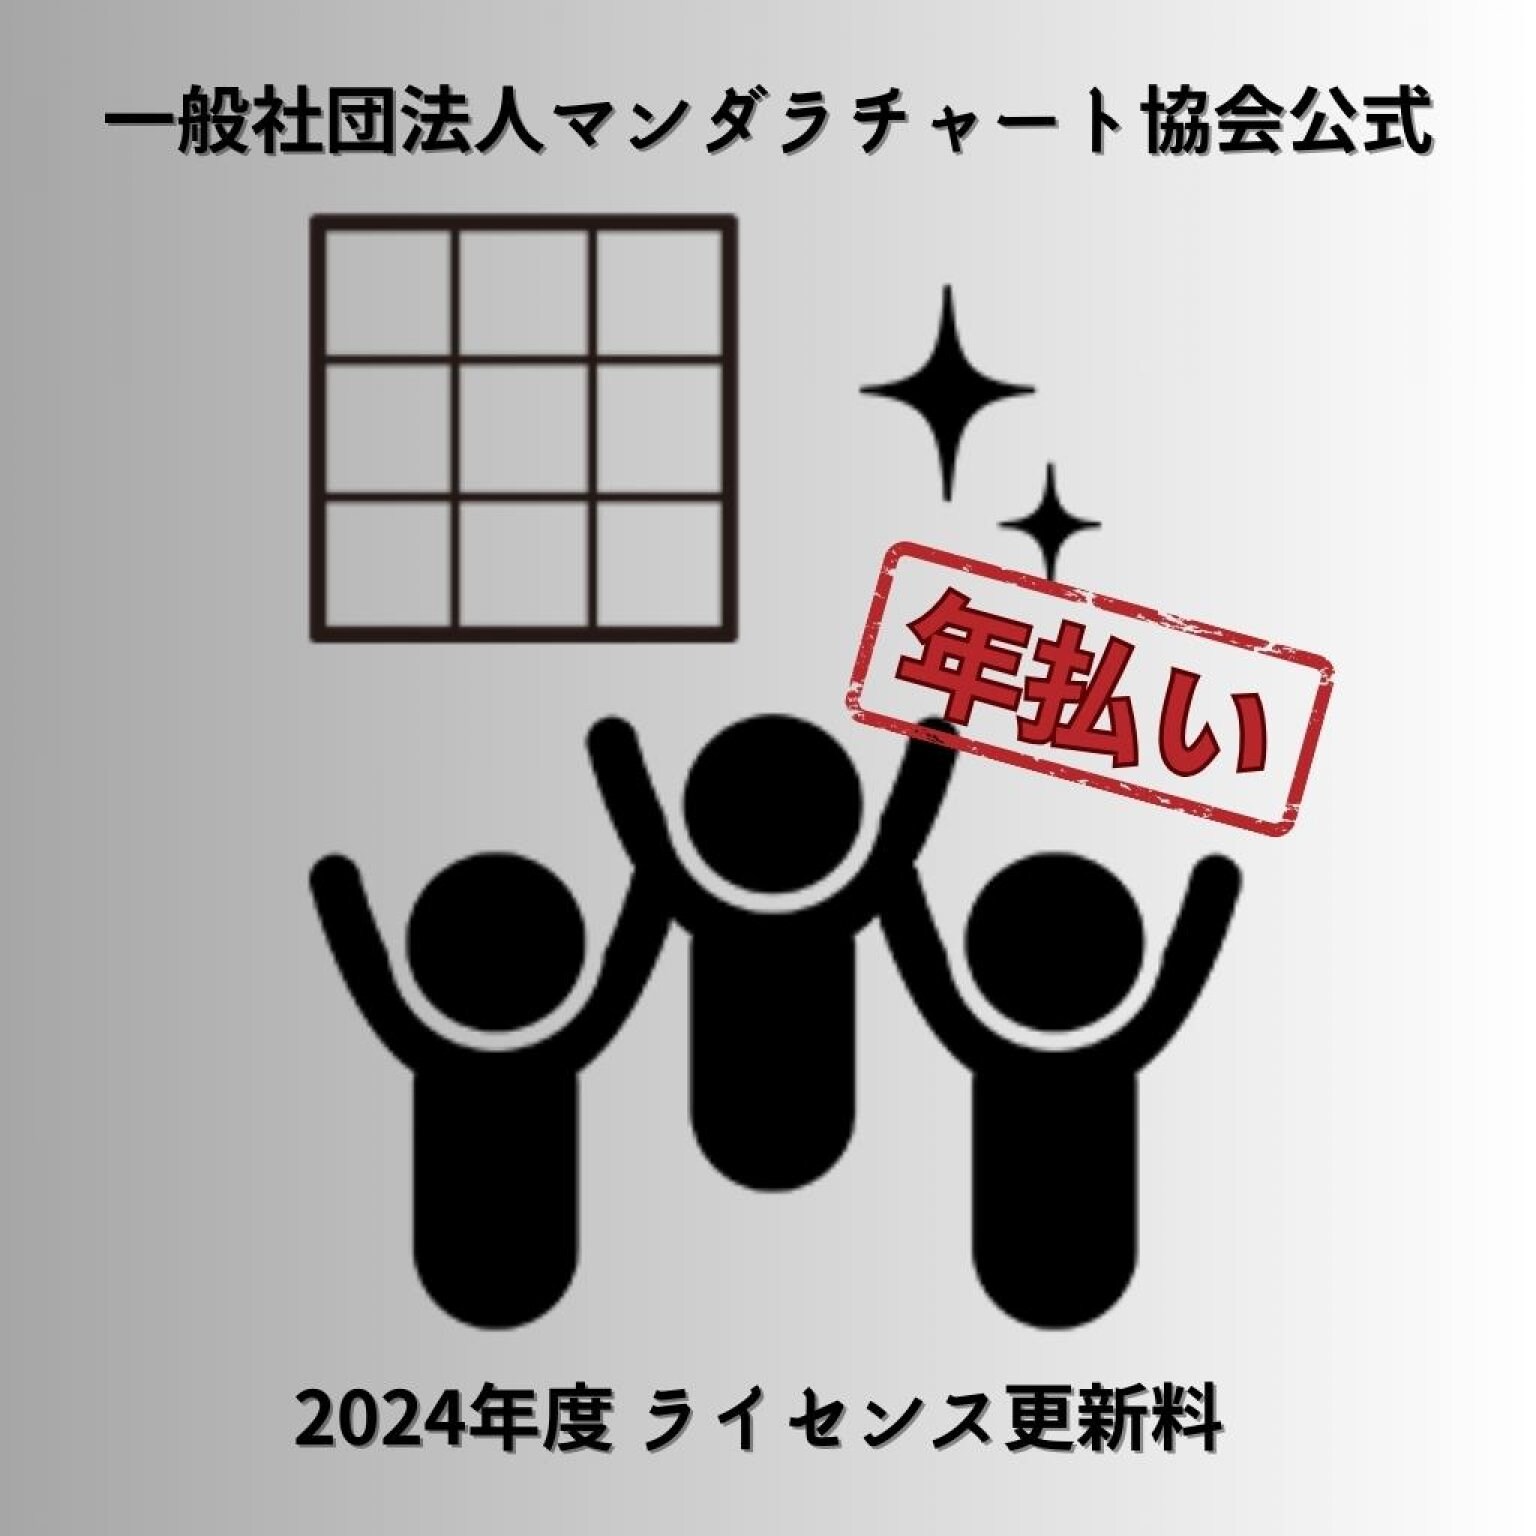 【年払い】2024年度ライセンス更新料